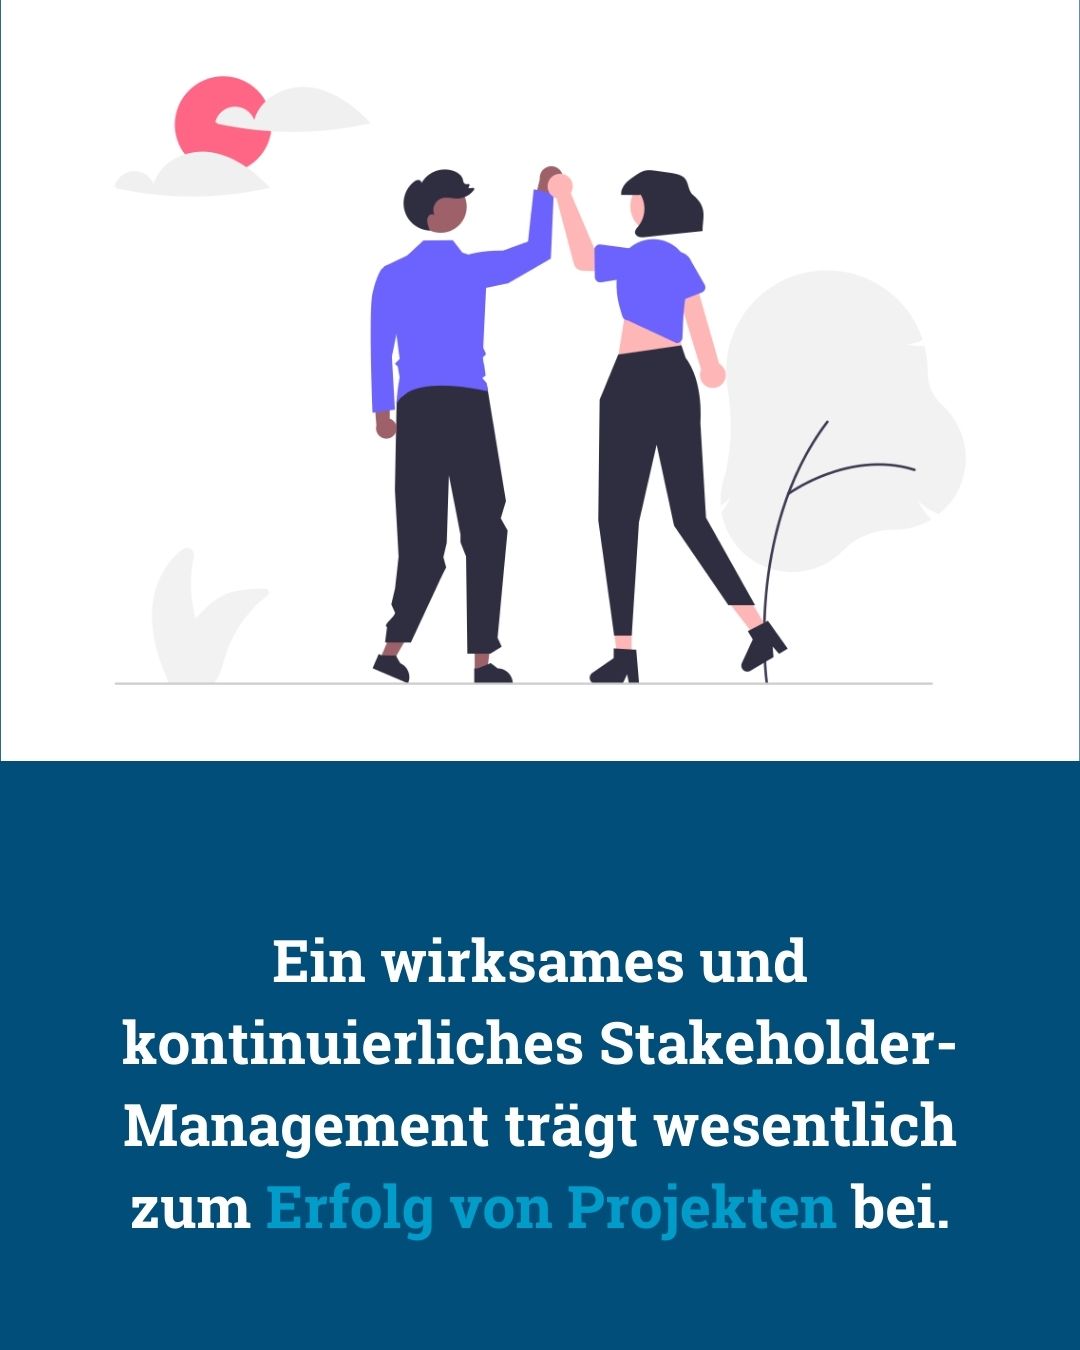 Gutes Stakeholder-Management - von Klaus Nitsche - 12